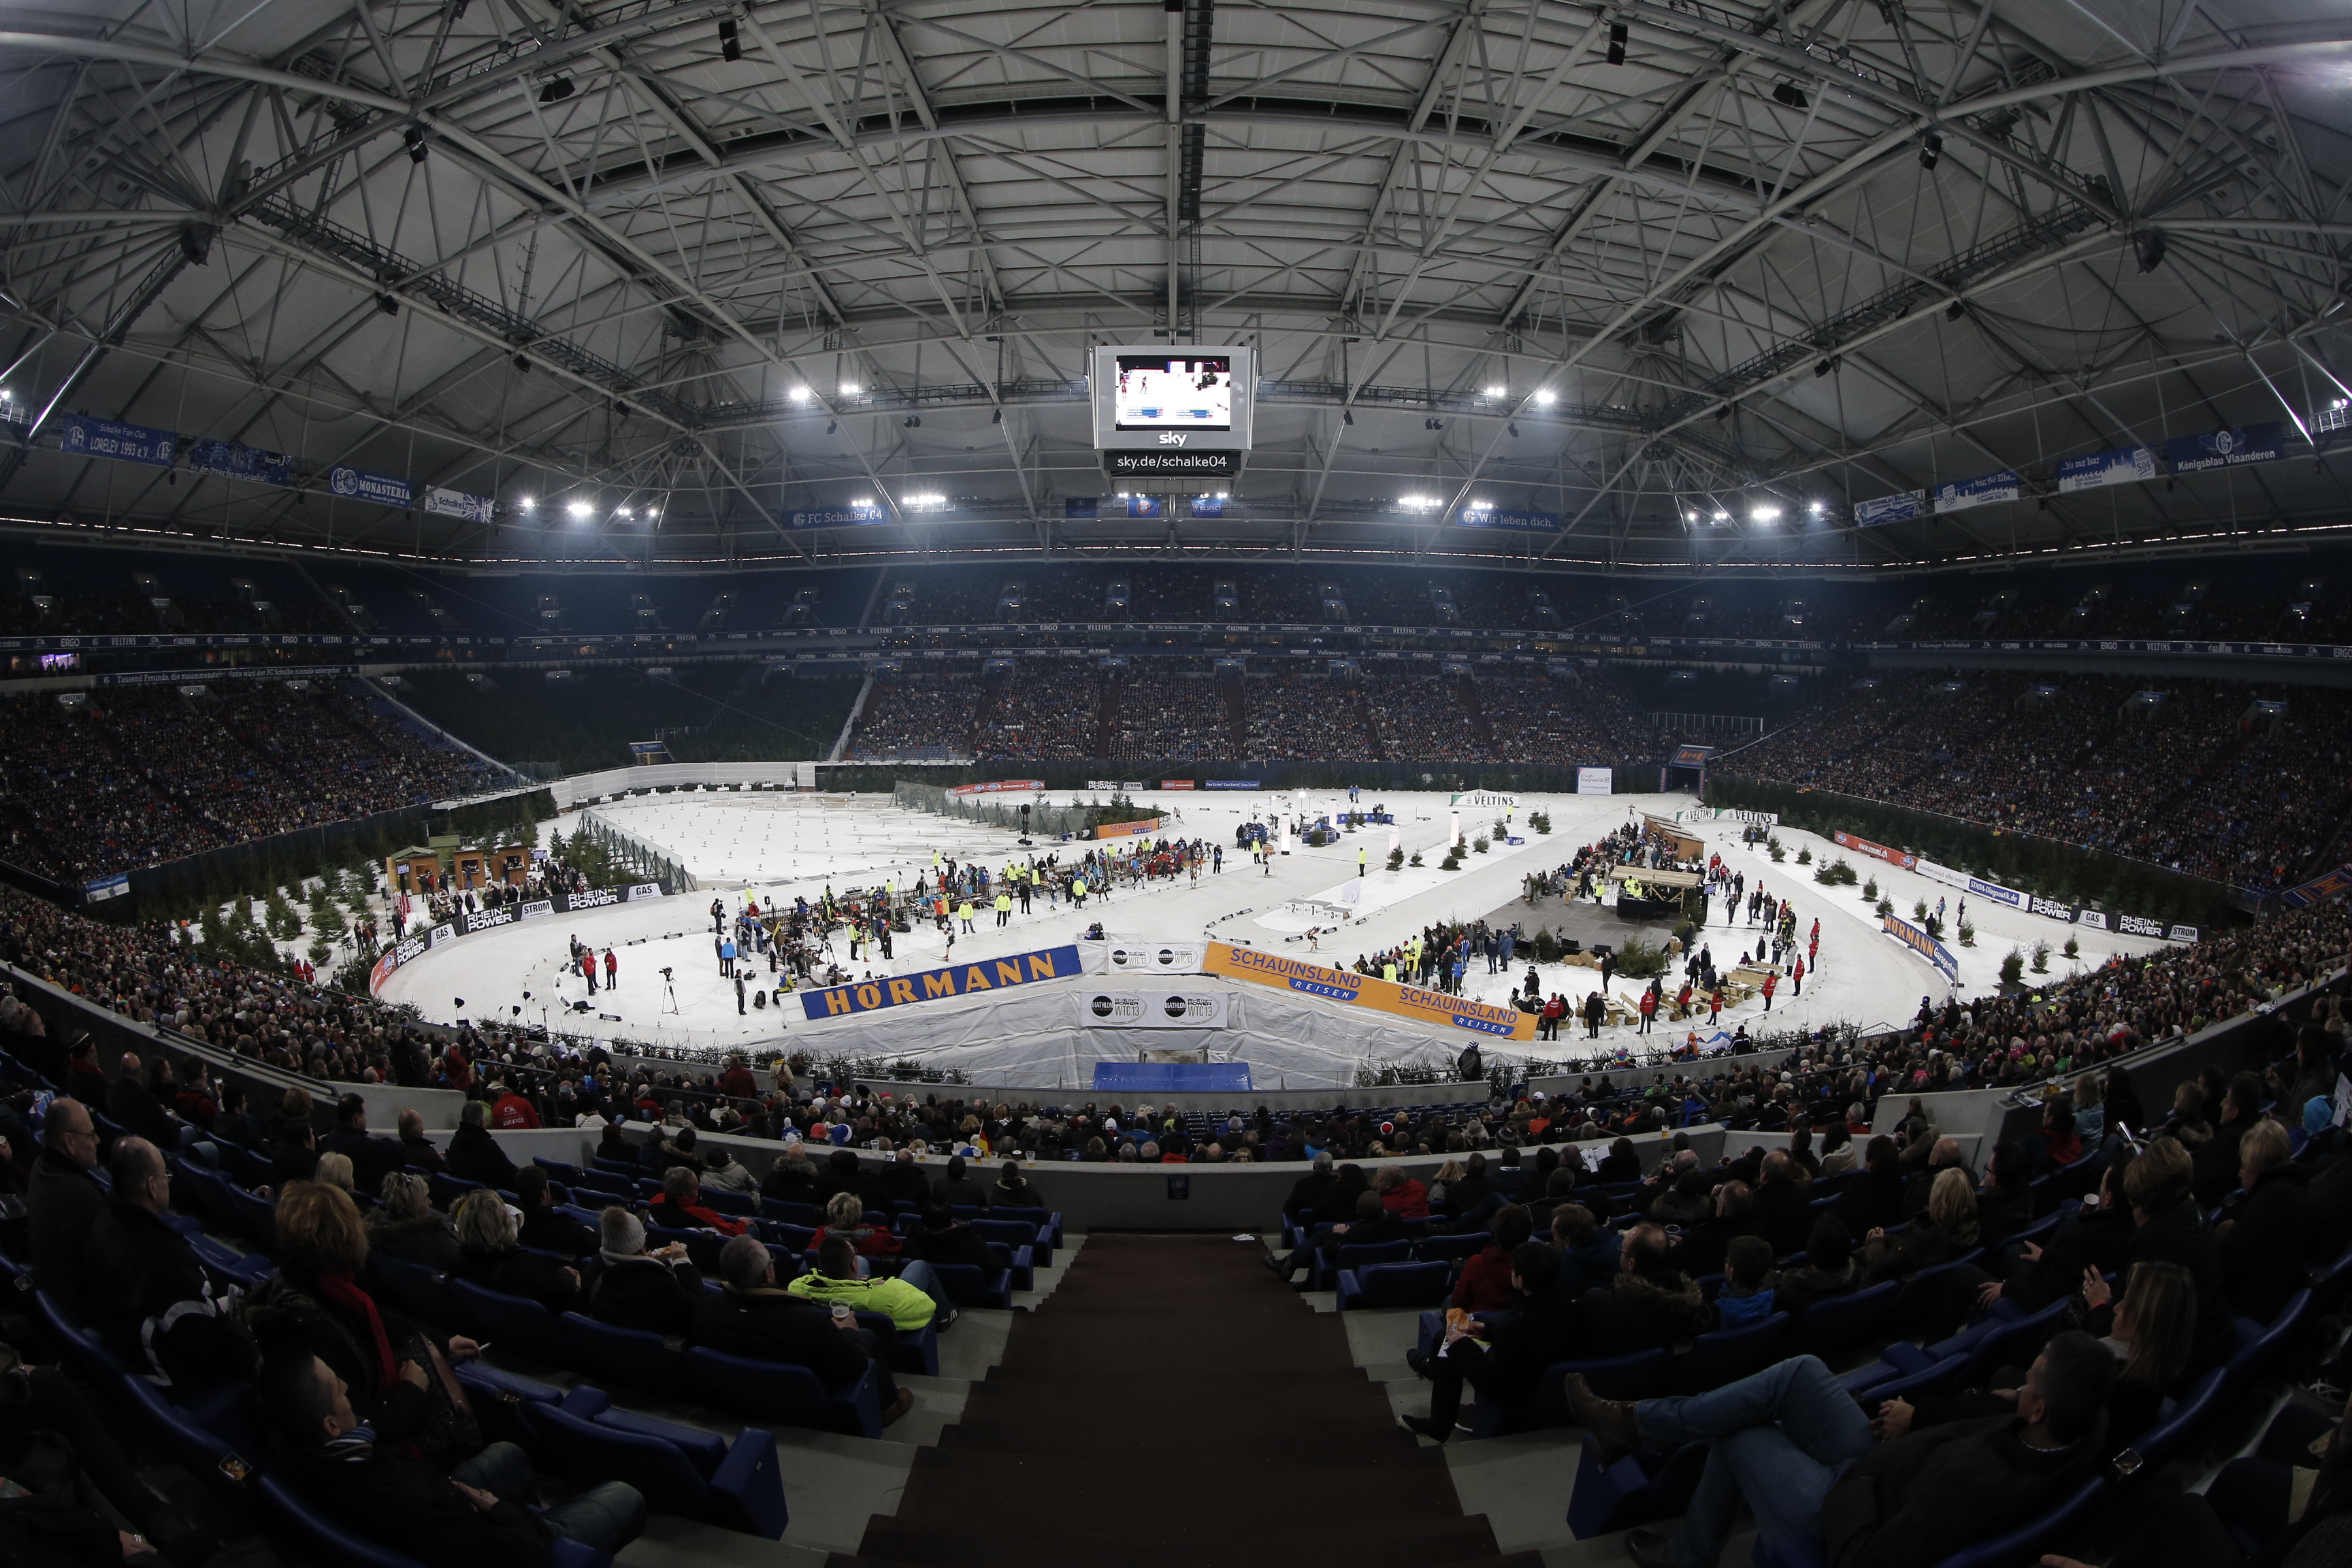 The Schalke soccer arena ready for biathlon action on Saturday. Photo: Karsten Rabas / Schalke World Team Challenge 13.